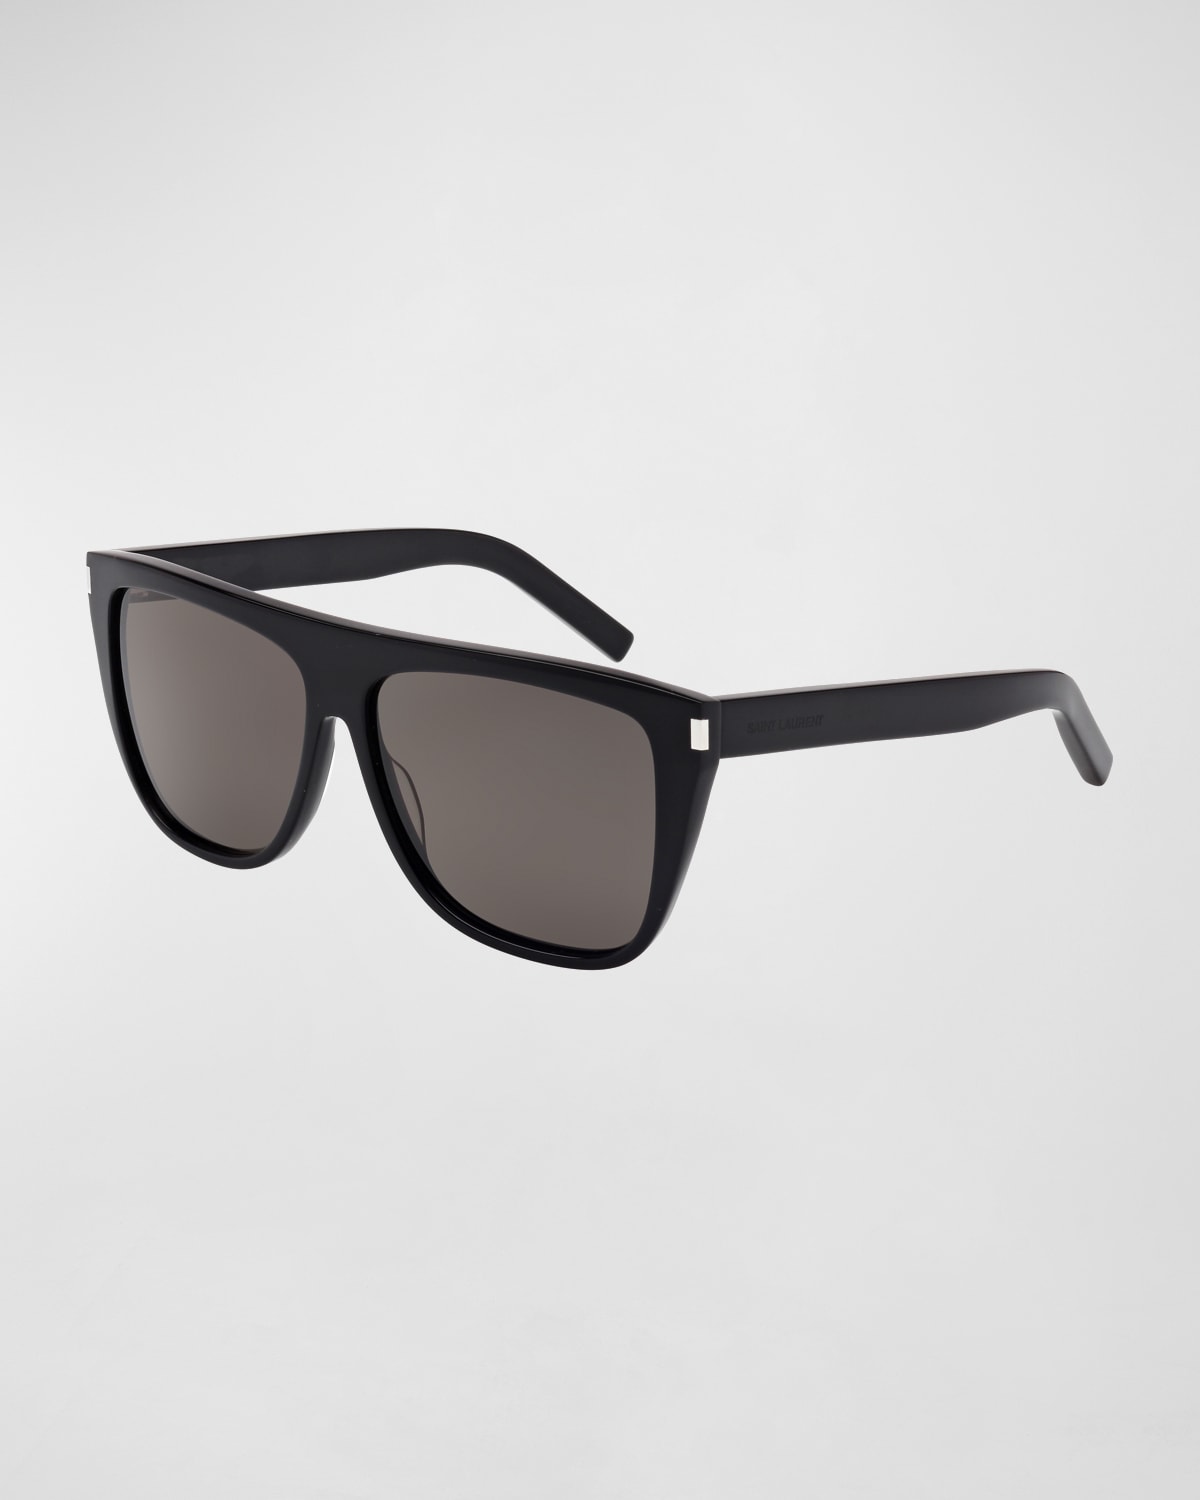 Men's SL 1 Slim Plastic Sunglasses